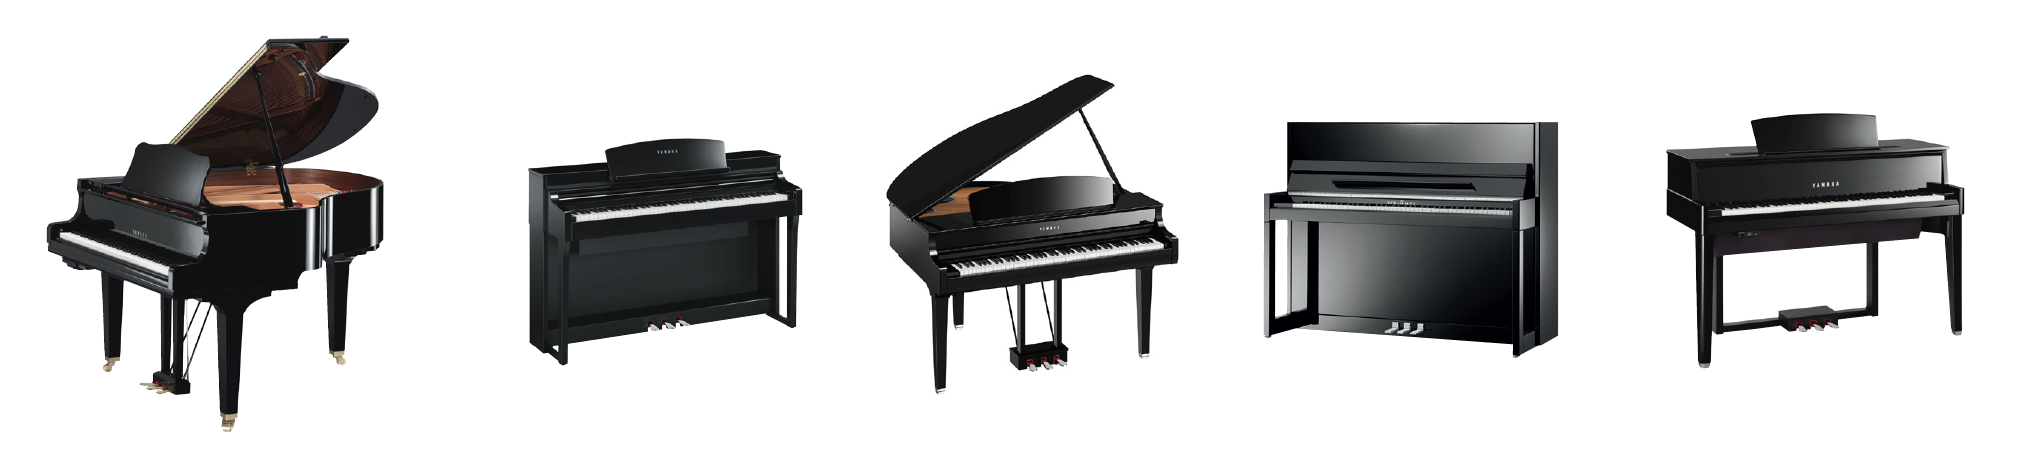 Yamaha-Pianos